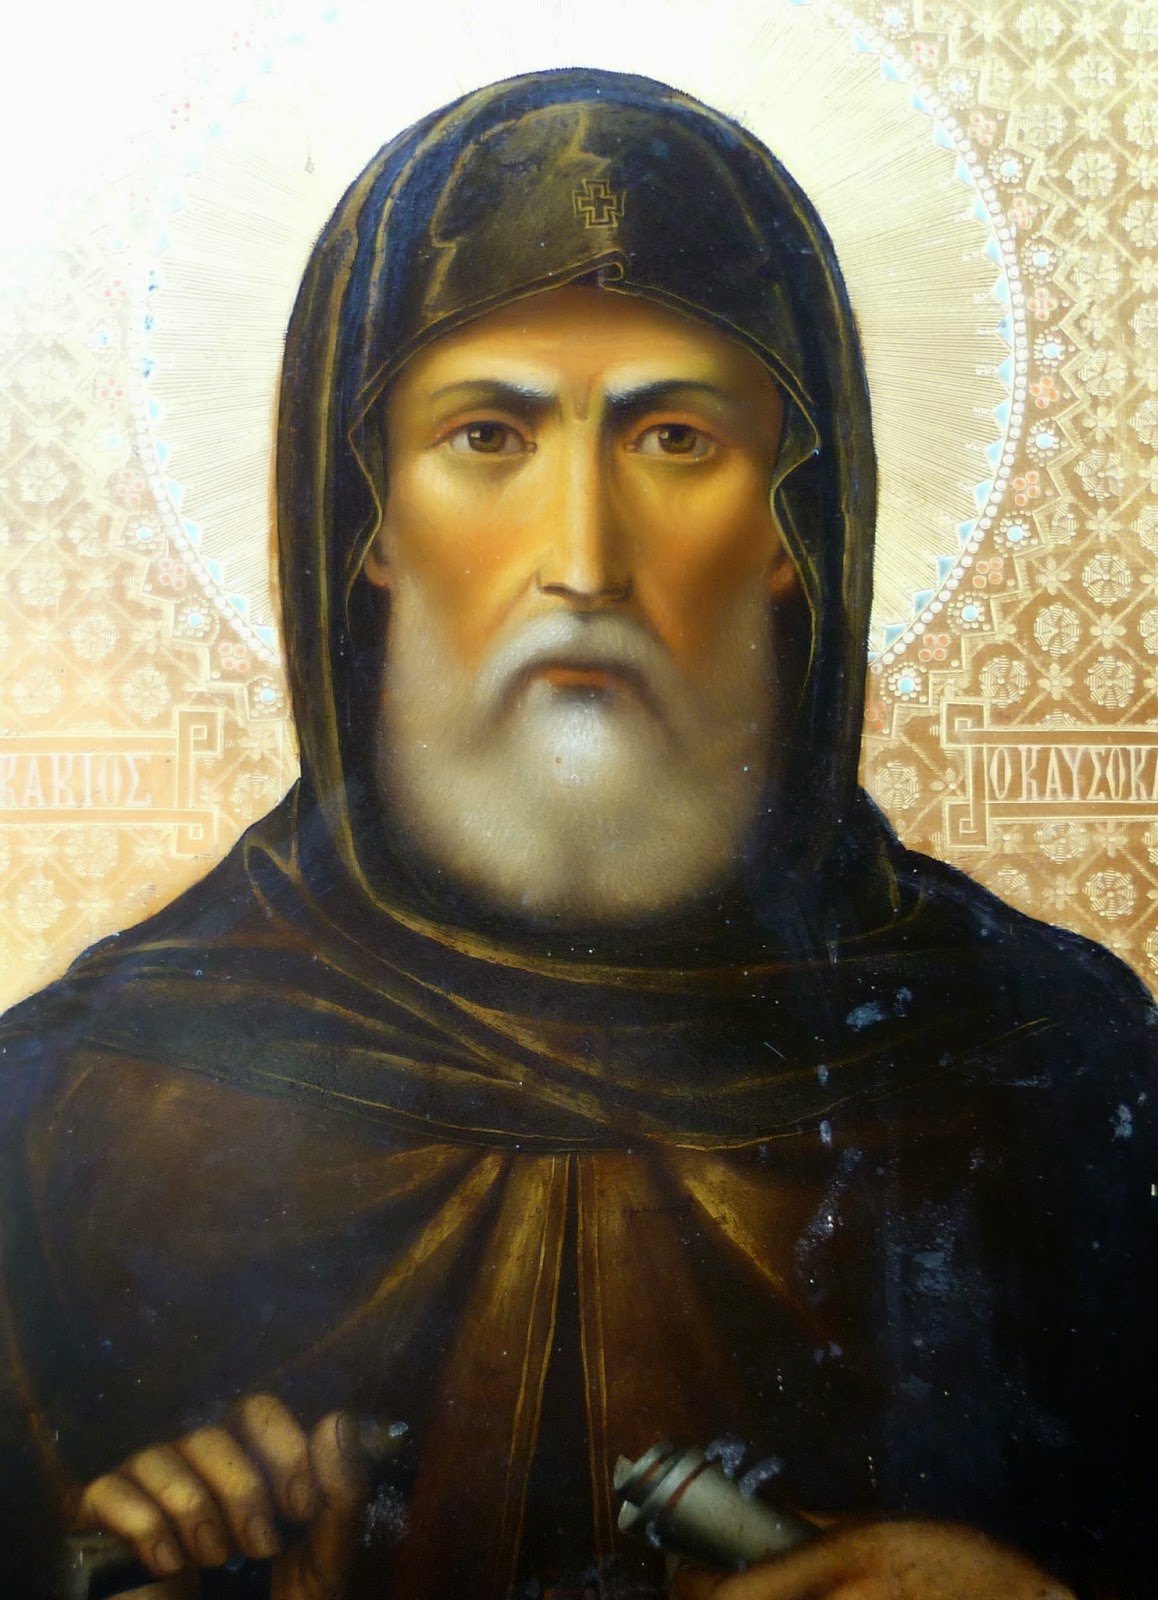 4708 - Ο εορτασμός της Μνήμης του Αγίου Ακακίου του Καυσοκαλυβίτου στην Αθήνα, την Κυριακή των Μυροφόρων 4 Μαΐου - Φωτογραφία 1